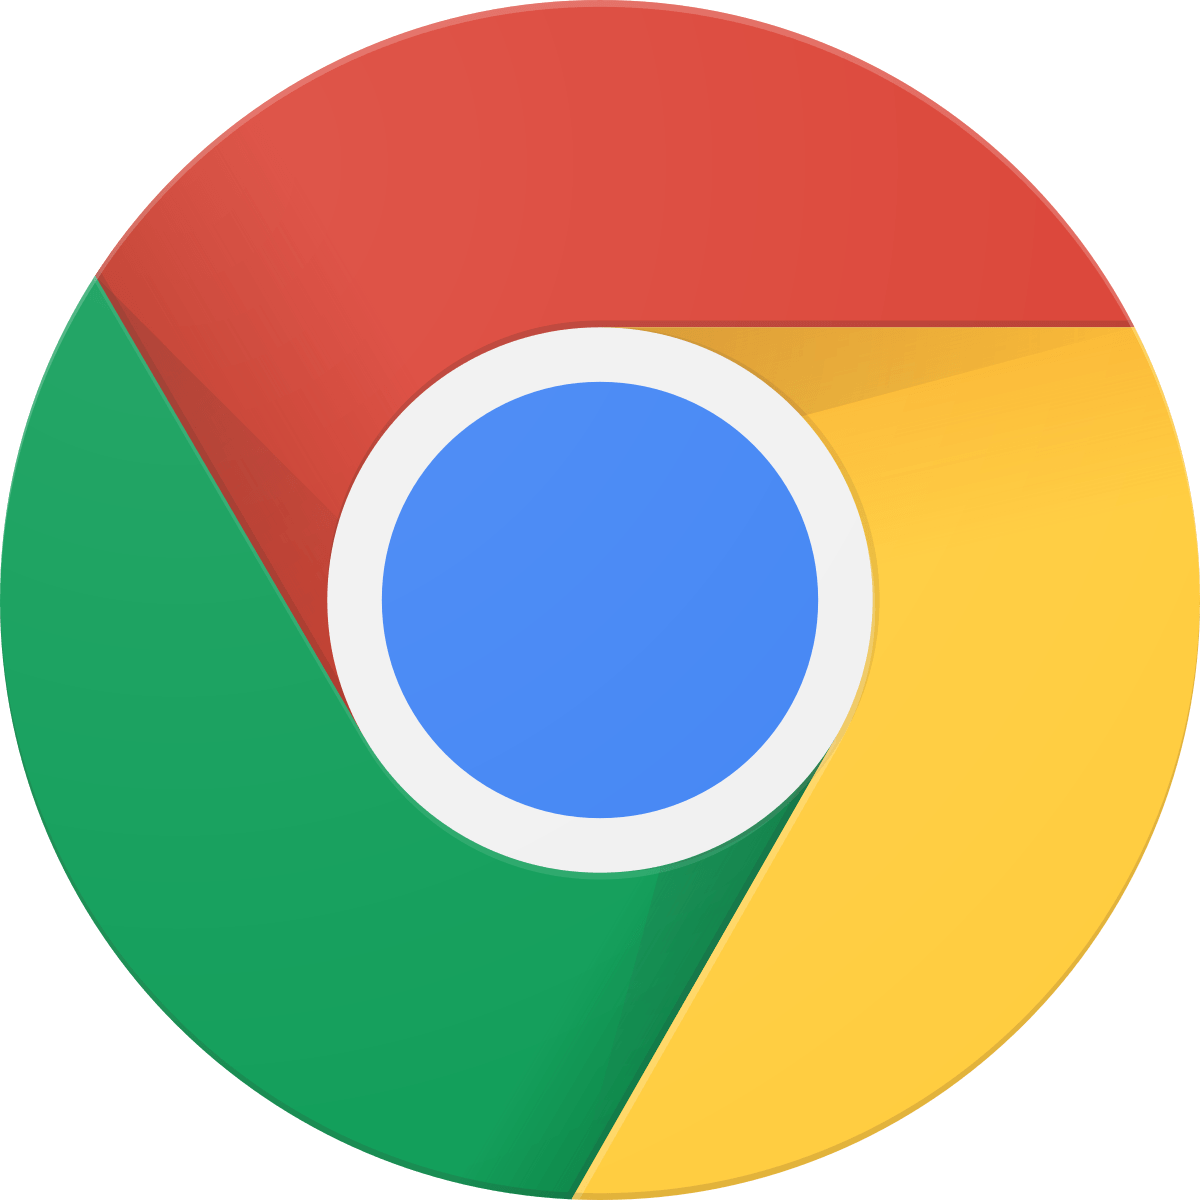 Chrome Mobile Logo - Google Chrome